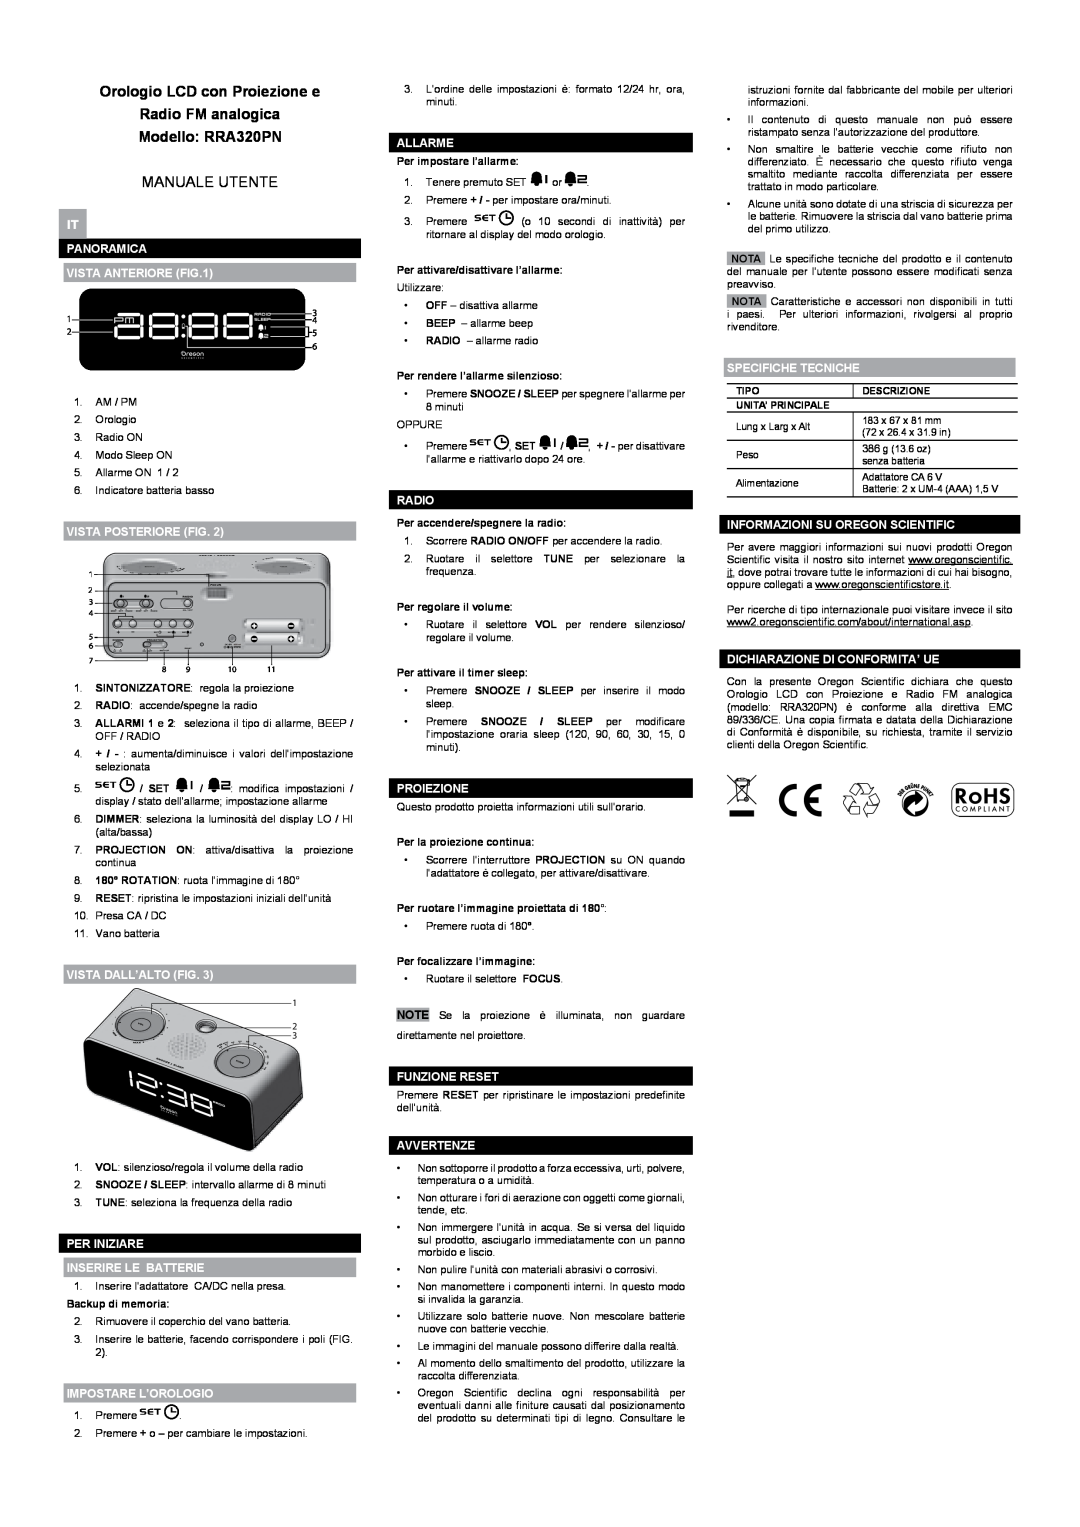 Oregon Scientific user manual Orologio LCD con Proiezione e Radio FM analogica Modello RRA320PN, Manuale Utente 